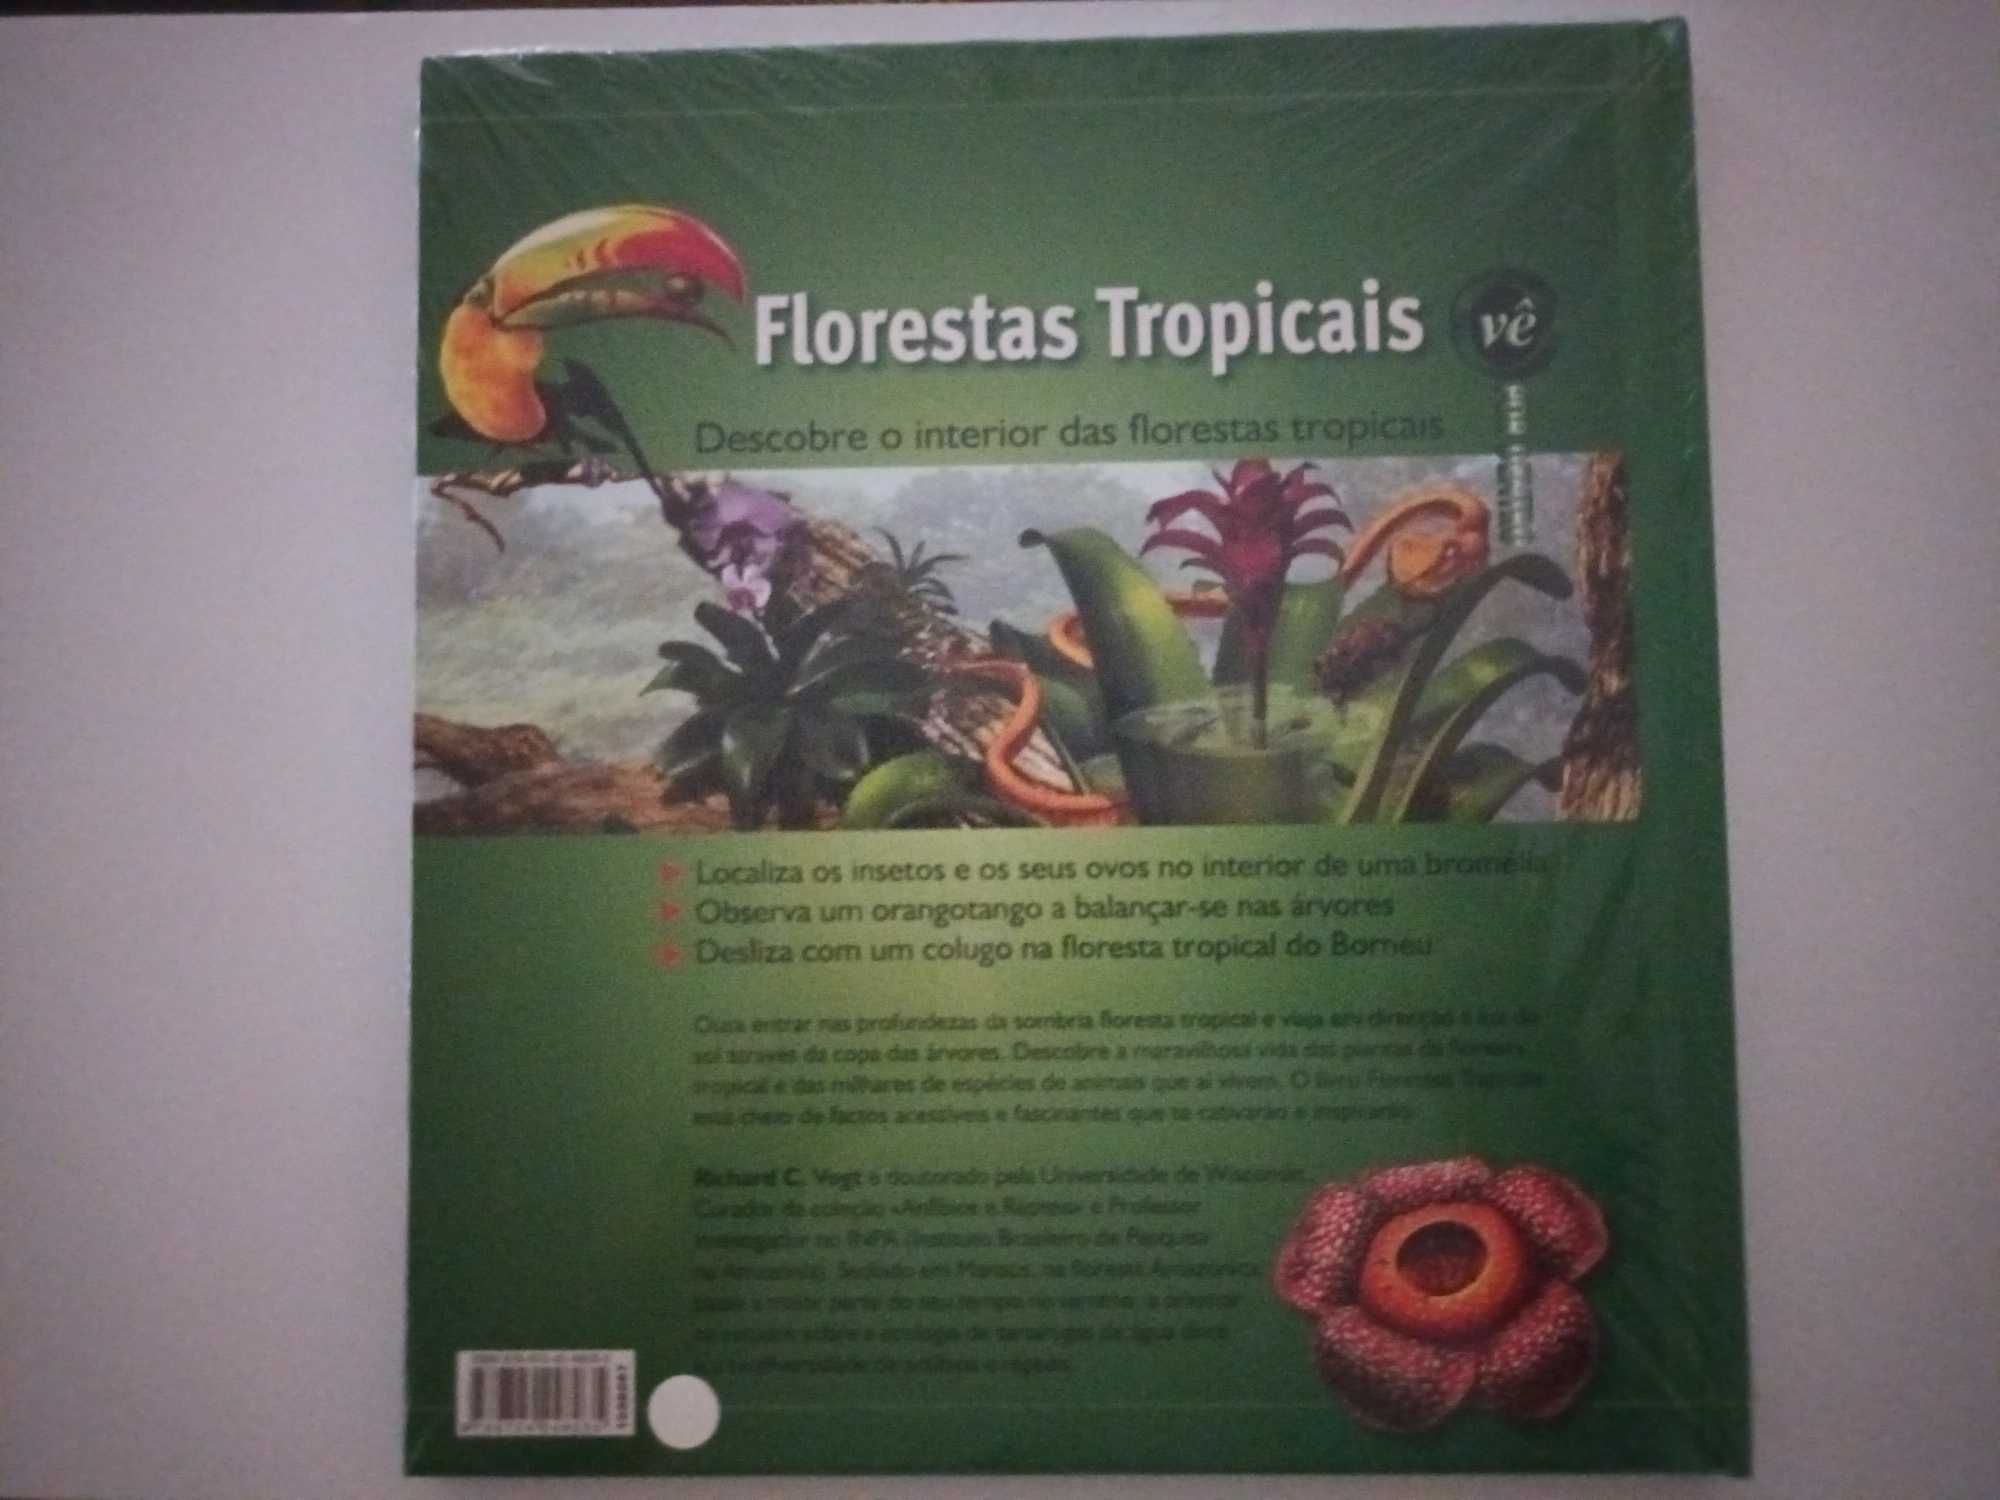 Vê por dentro - Florestas Tropicais